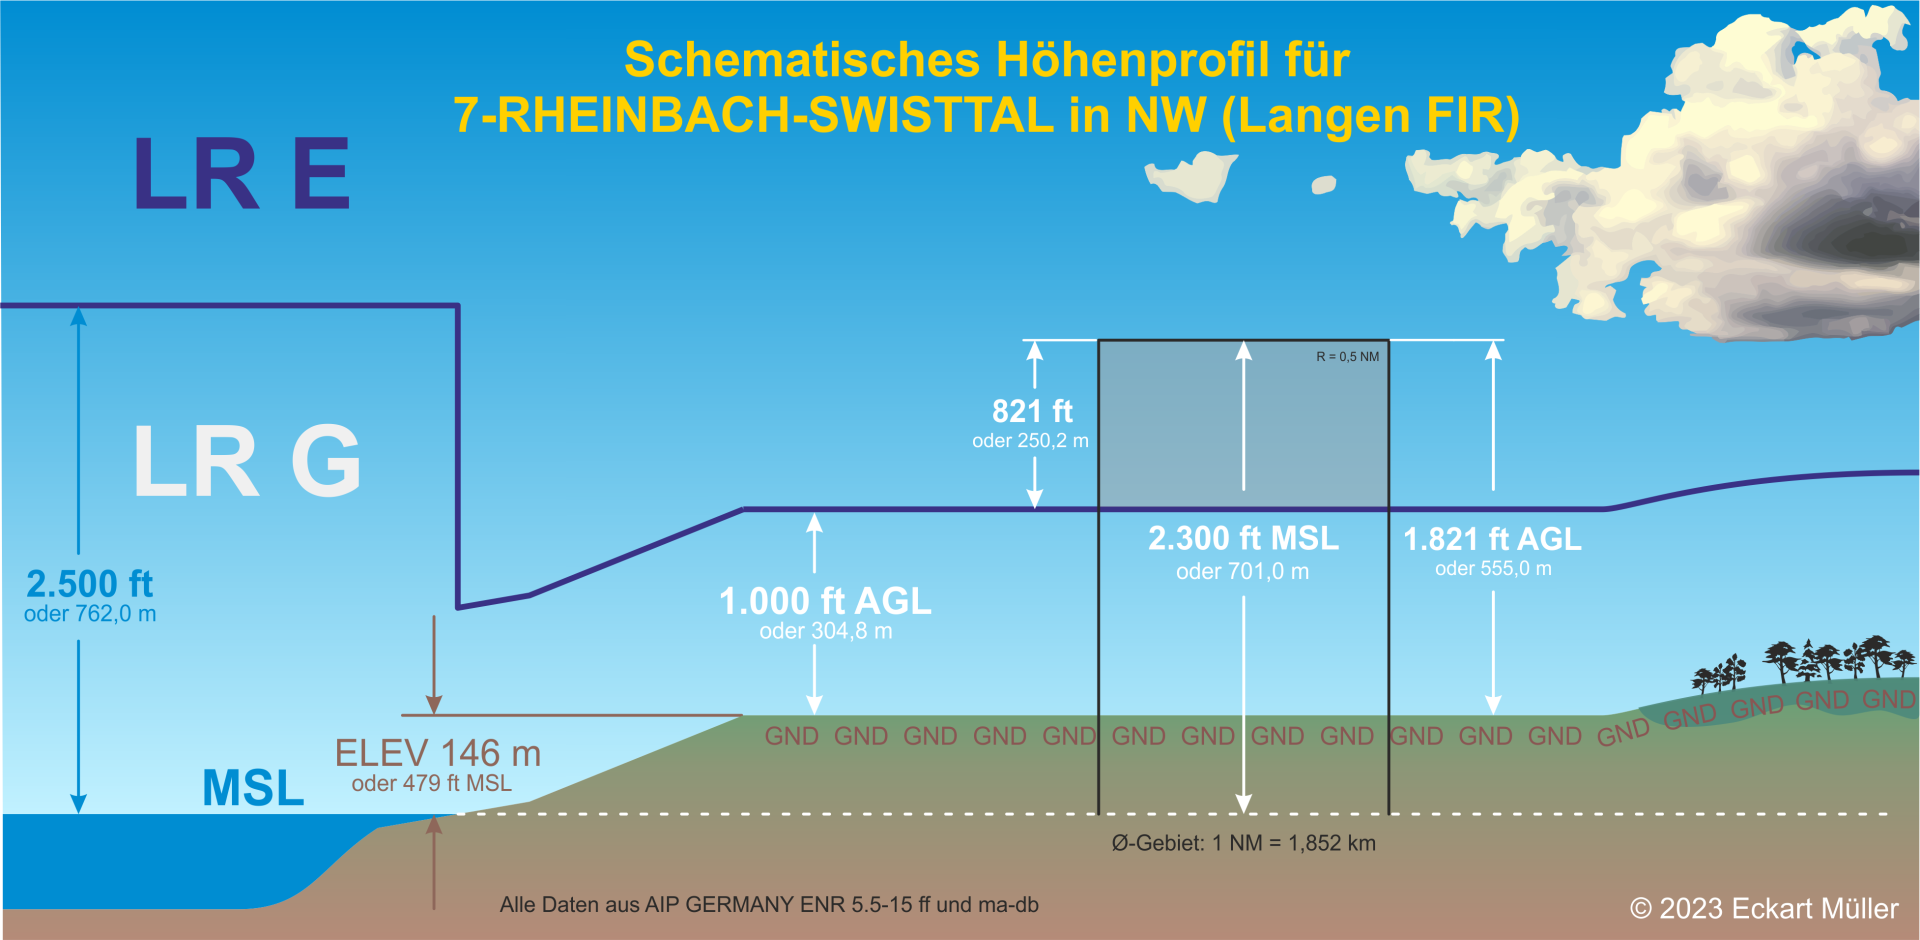 7-RHEINBACH-SWISTTAL - MFC Rheinbach-Swisttal eV - Höhenprofil.png